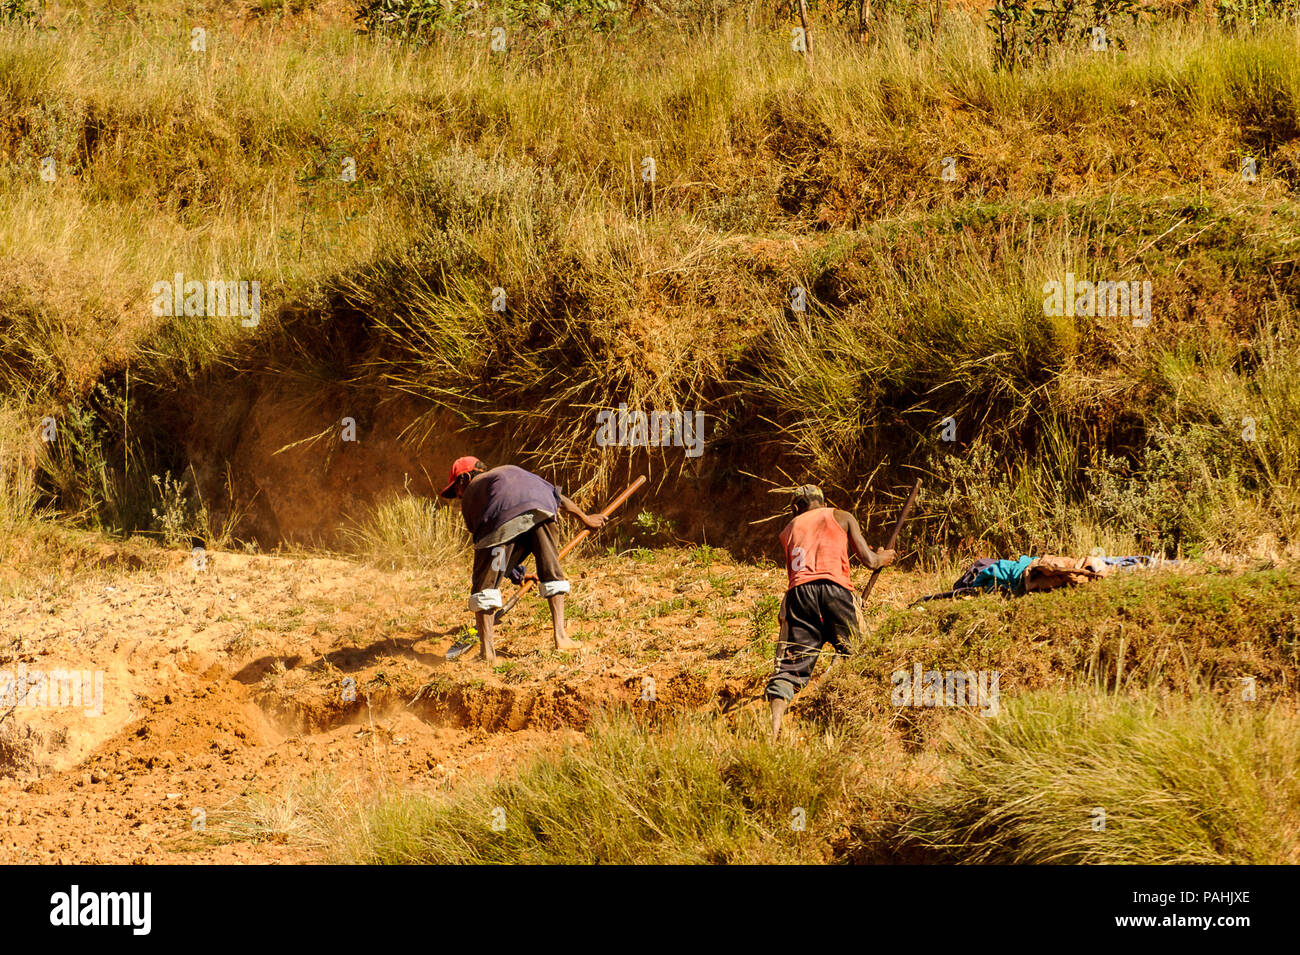 ANTANANARIVO, Madagaskar - 29. JUNI 2011: Unbekannter Madagaskar Menschen Graben im Sand. Menschen in Madagaskar Leiden der Armut aufgrund der langsamen developm Stockfoto